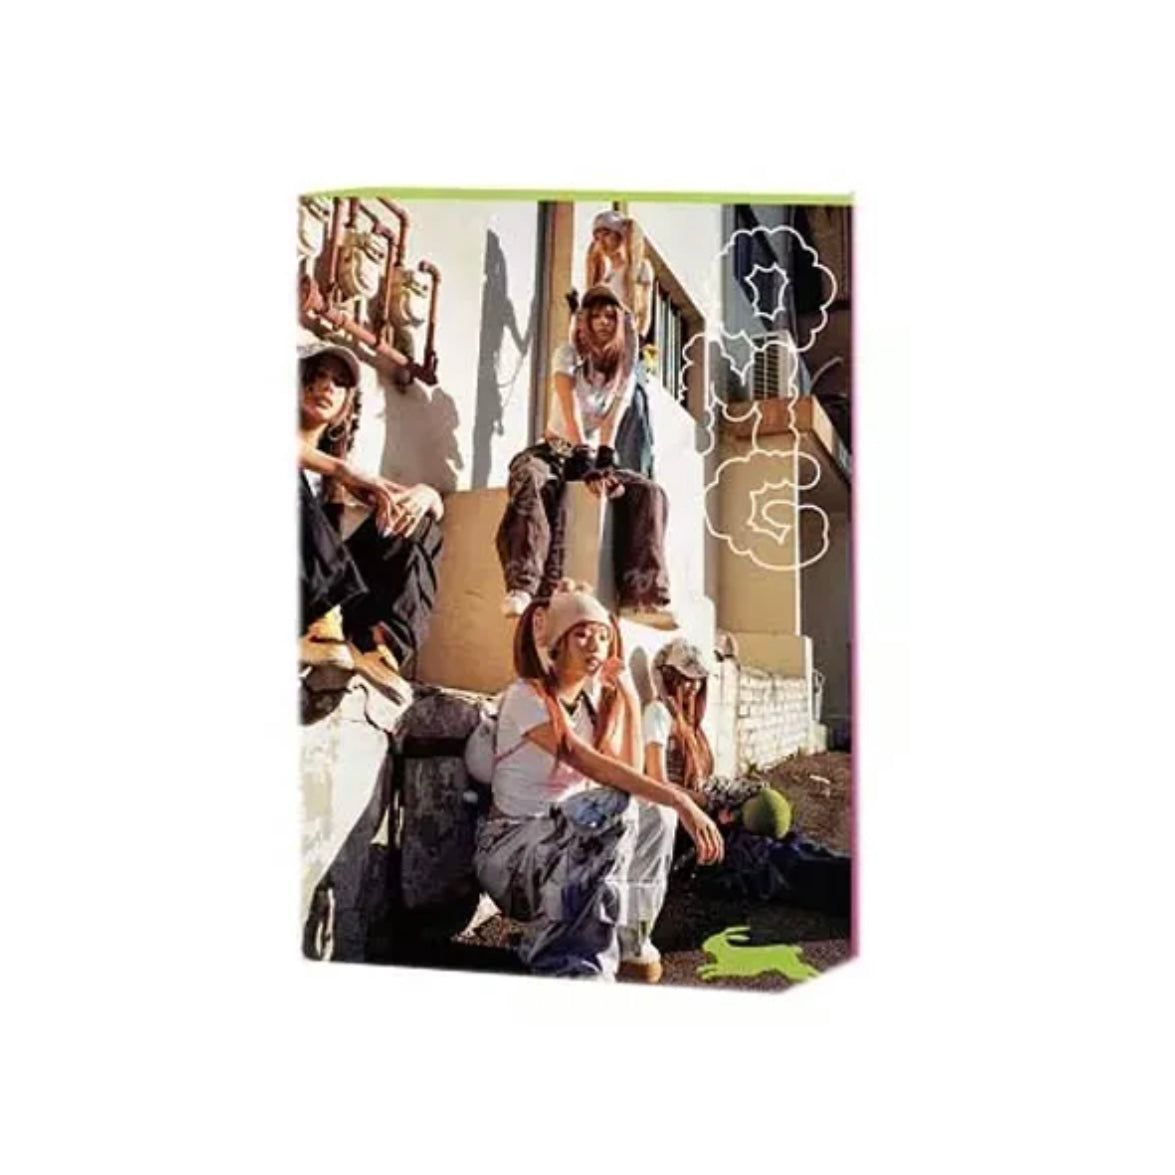  일반 NewJeans OMG 1st Slngle Album Message Card 6ver